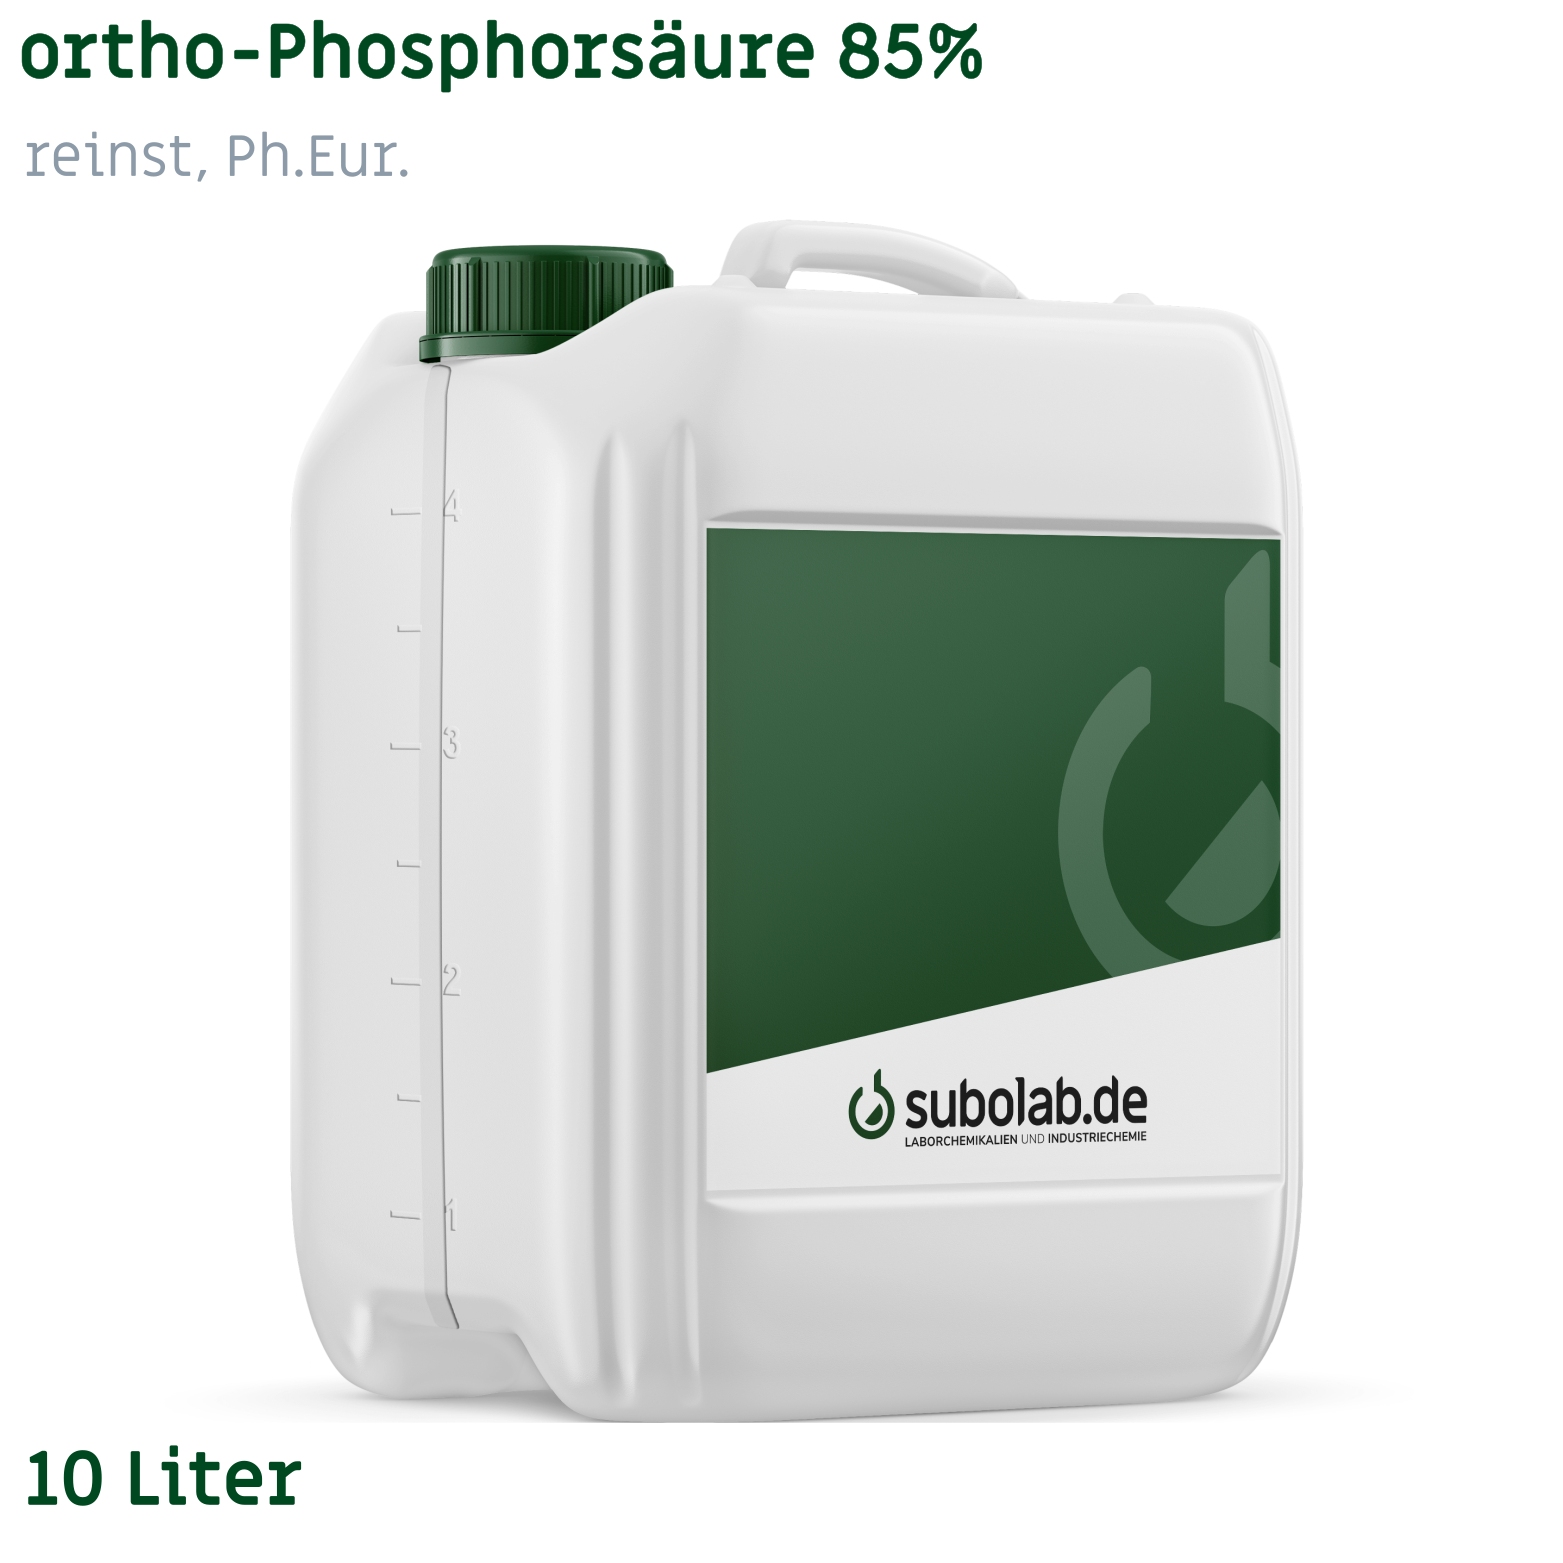 Bild von ortho-Phosphorsäure 85% reinst, Ph.Eur. (10 Liter)